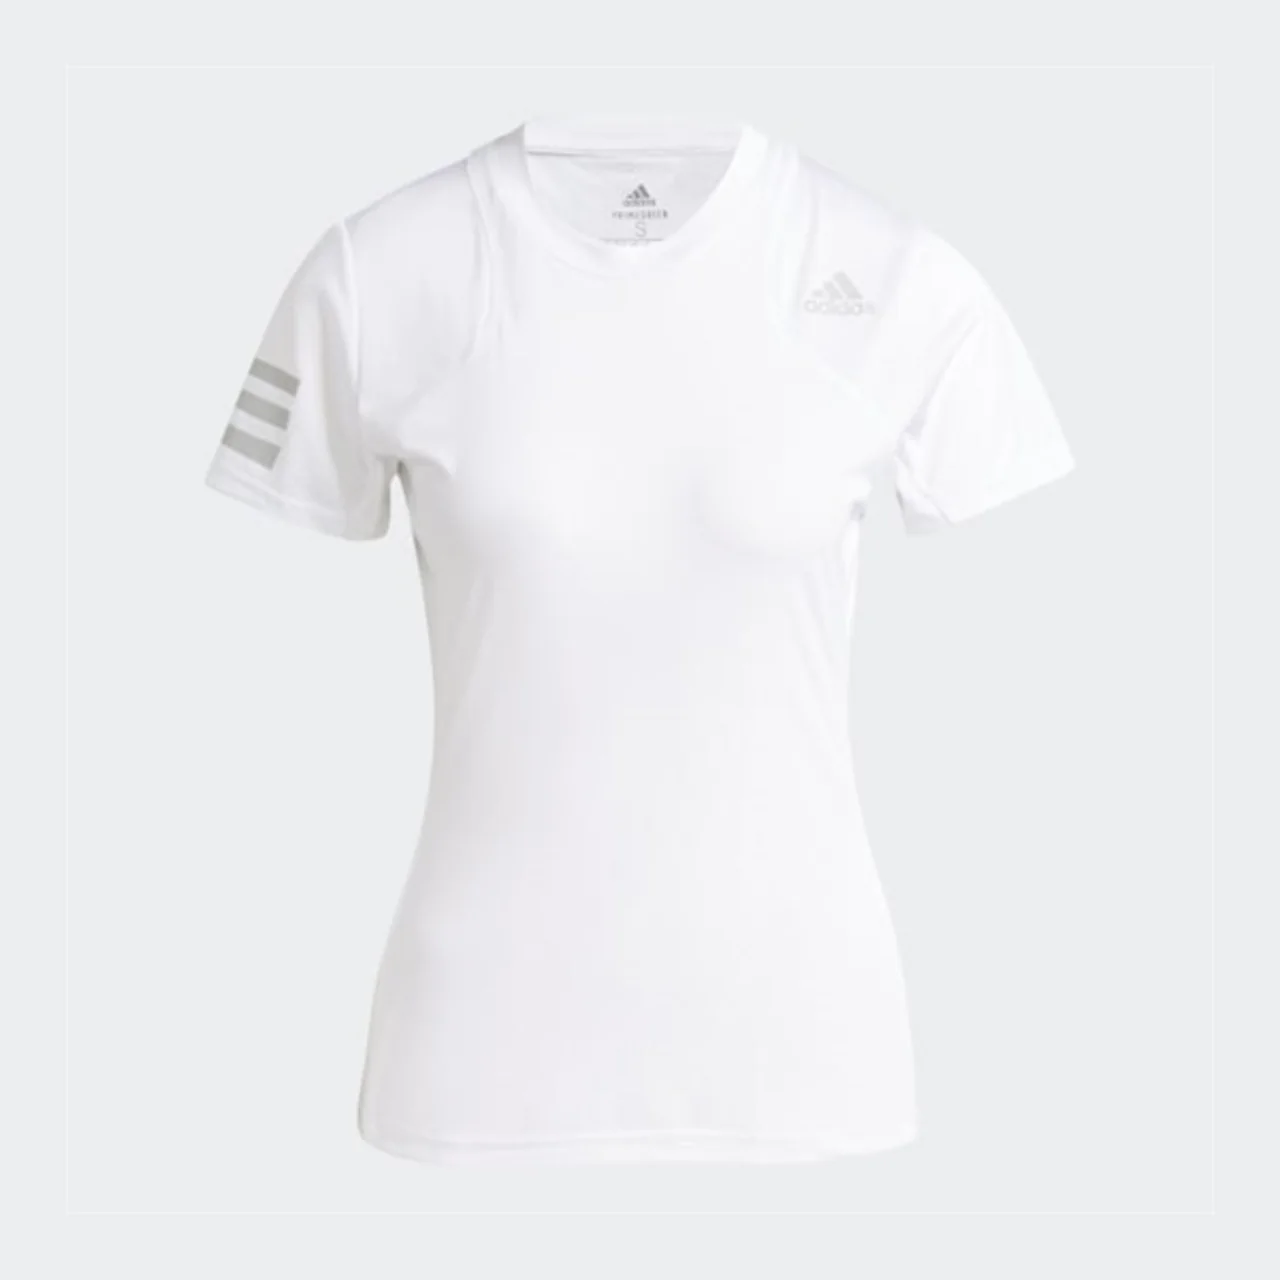 Adidas Club T-shirt White Women